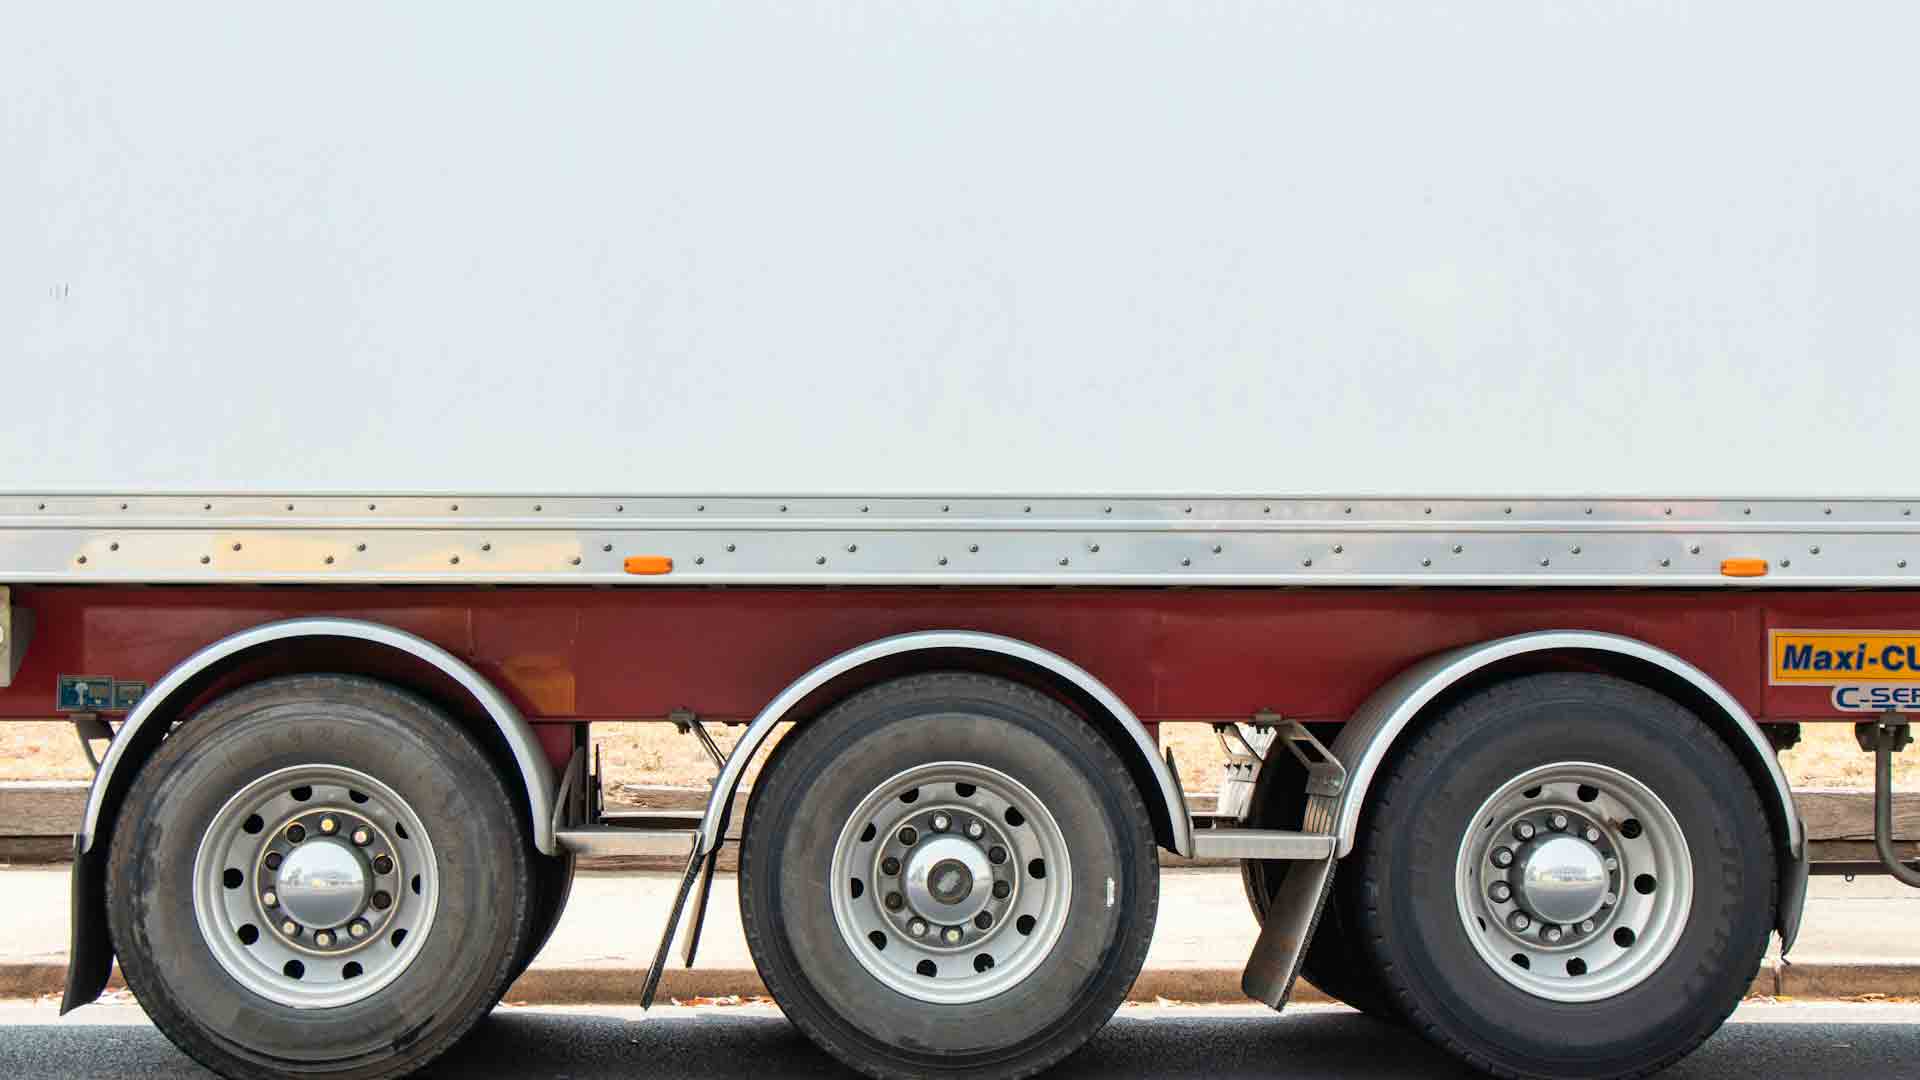 Coldiretti al Brennero contro il falso Made in Italy: controlli a tappeto su Tir e camion frigo